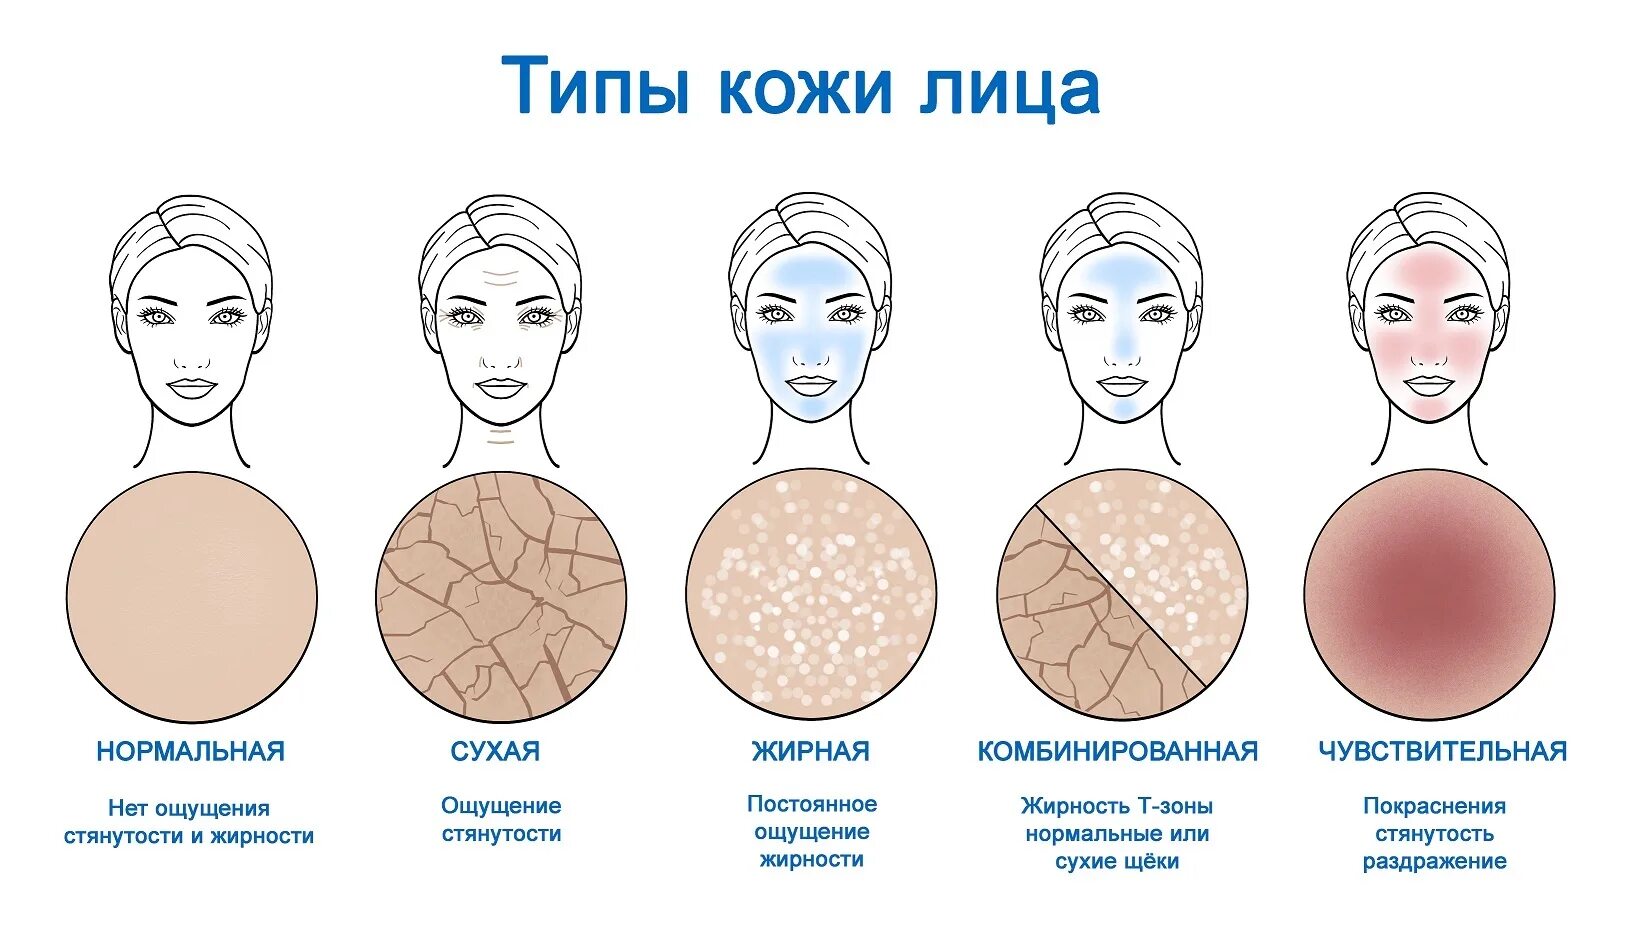 Ширина кожи. Как определить Тип кожи лица. Как понять какой Тип кожи лица. Типы кожи сухая жирная нормальная комбинированная. Тип кожи лица какие бывают.